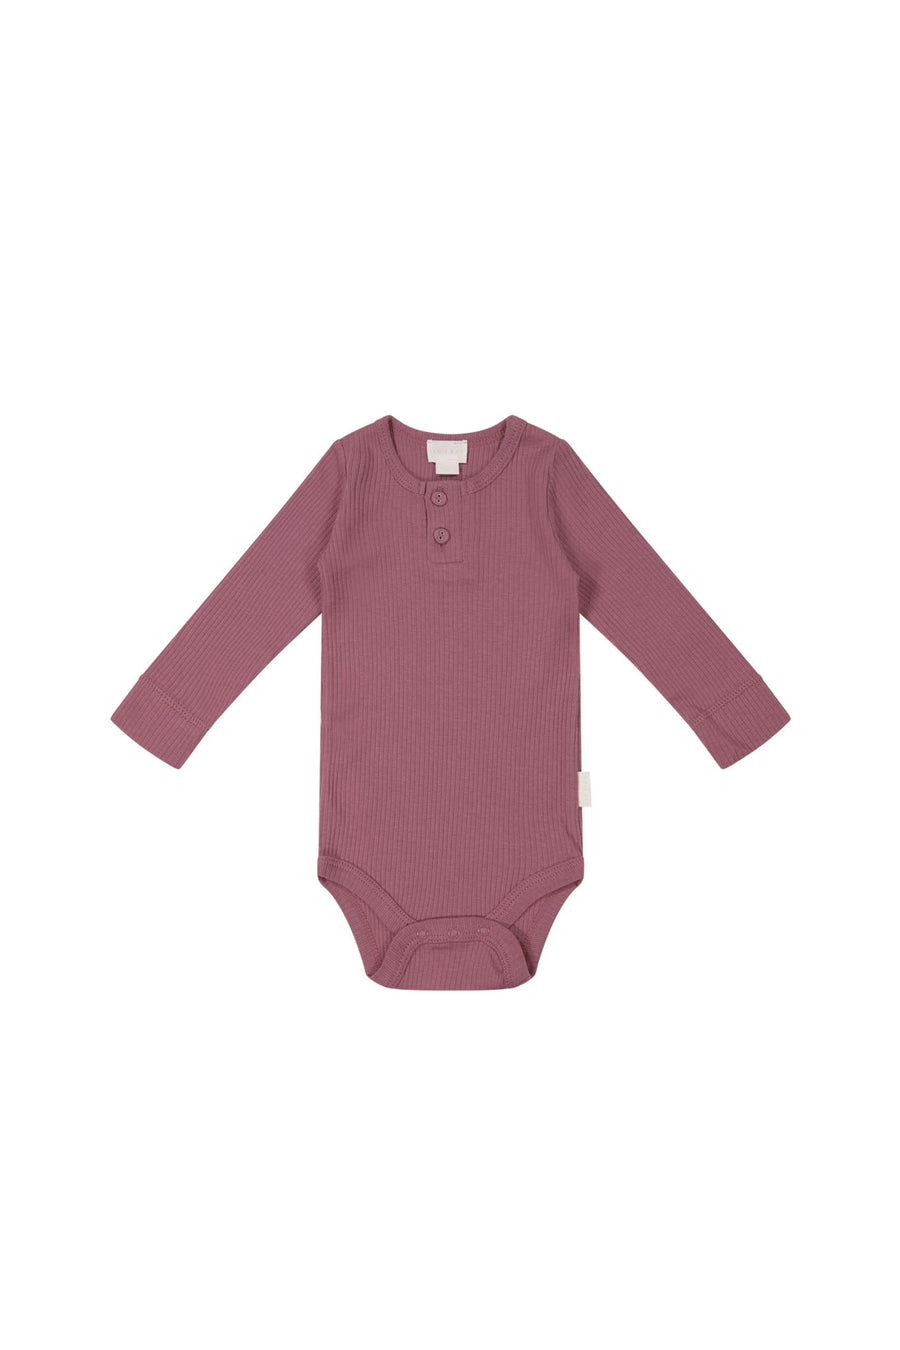 Organic Cotton Modal Long Sleeve Bodysuit - Rosette Childrens Bodysuit from Jamie Kay USA